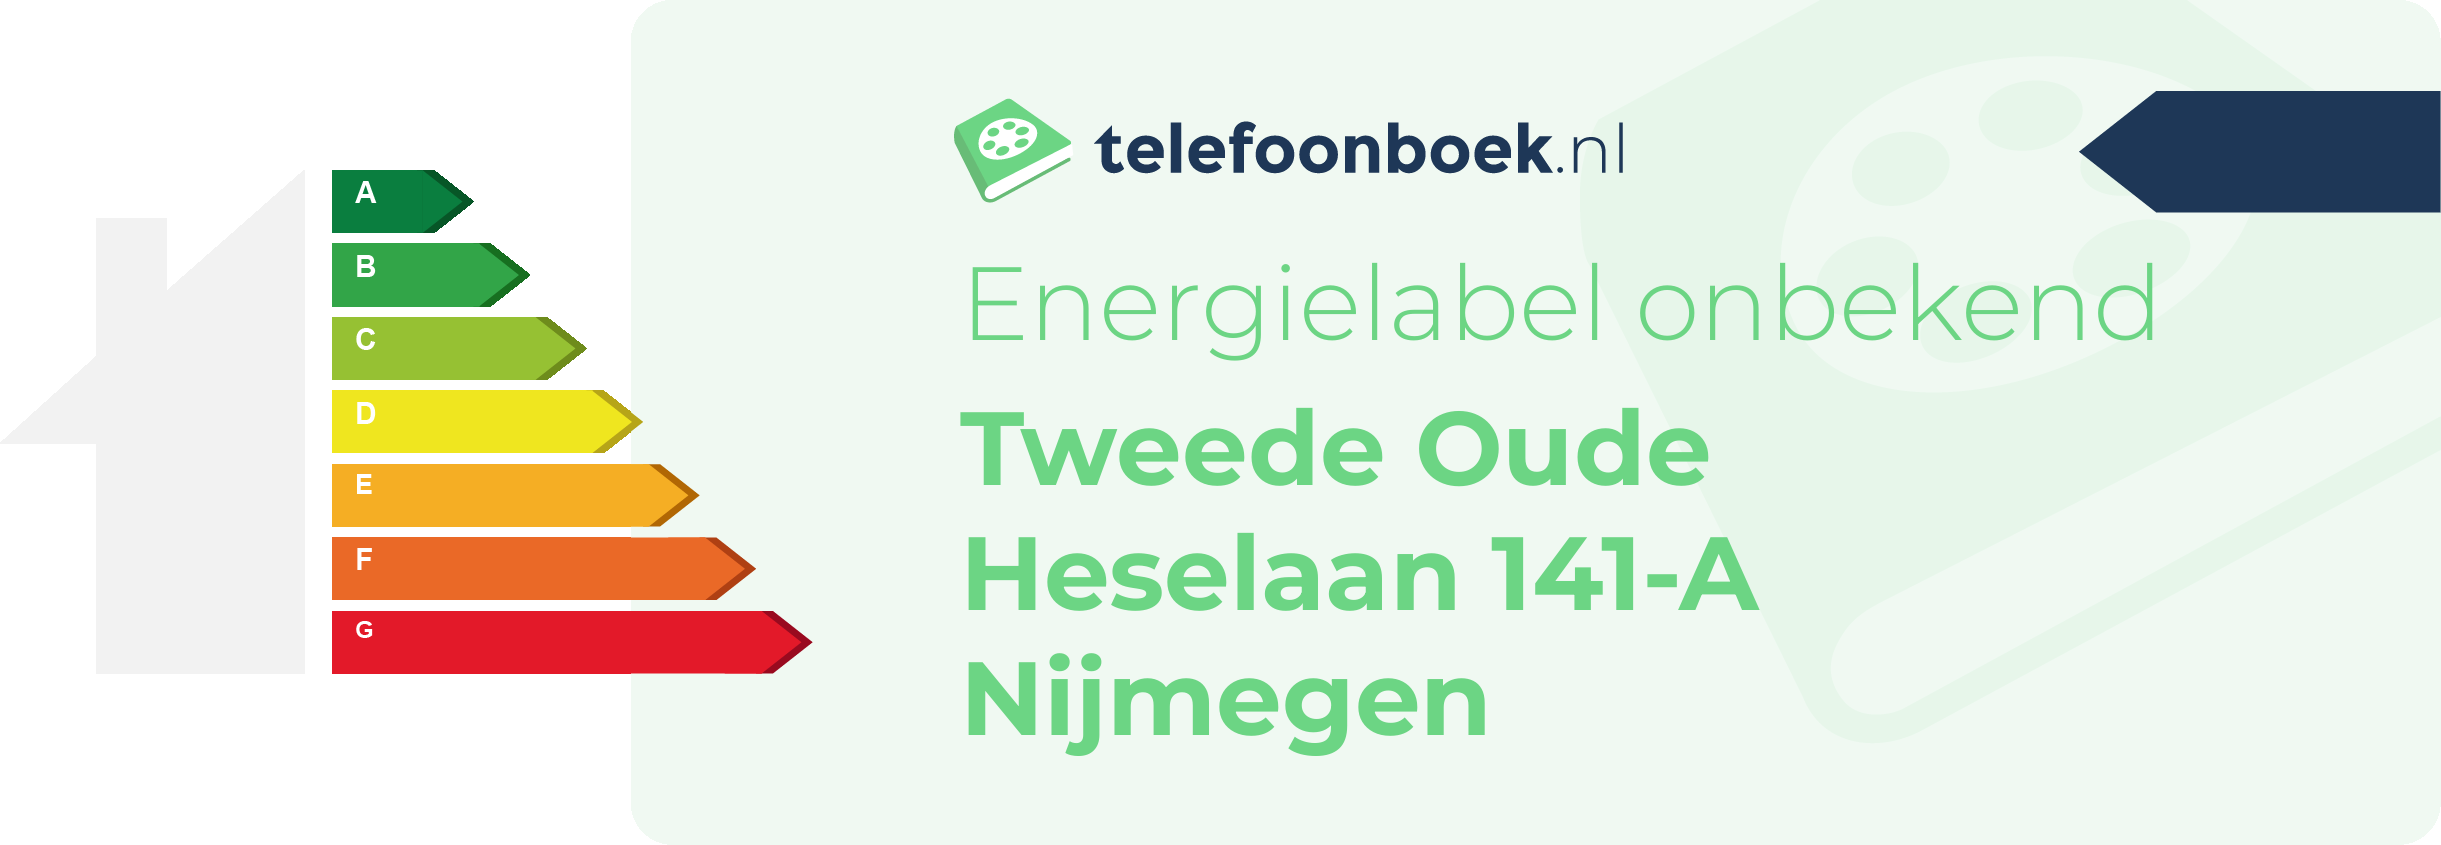 Energielabel Tweede Oude Heselaan 141-A Nijmegen